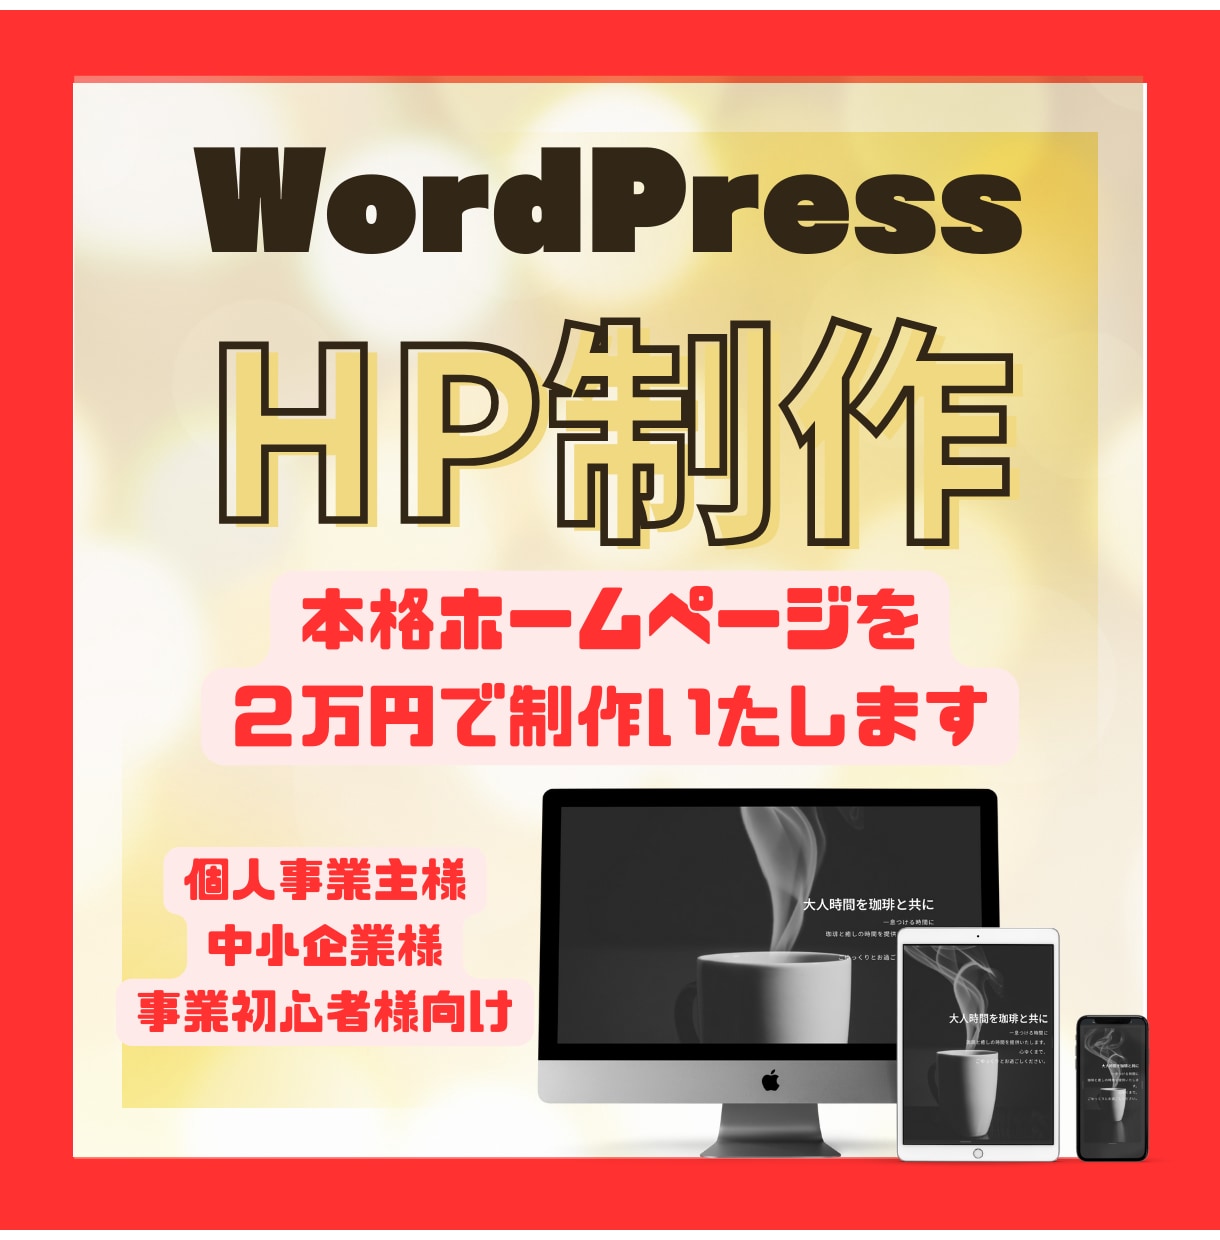 WordPressでHP制作致します 格安でクオリティの高いHPをWordPressで制作致します イメージ1